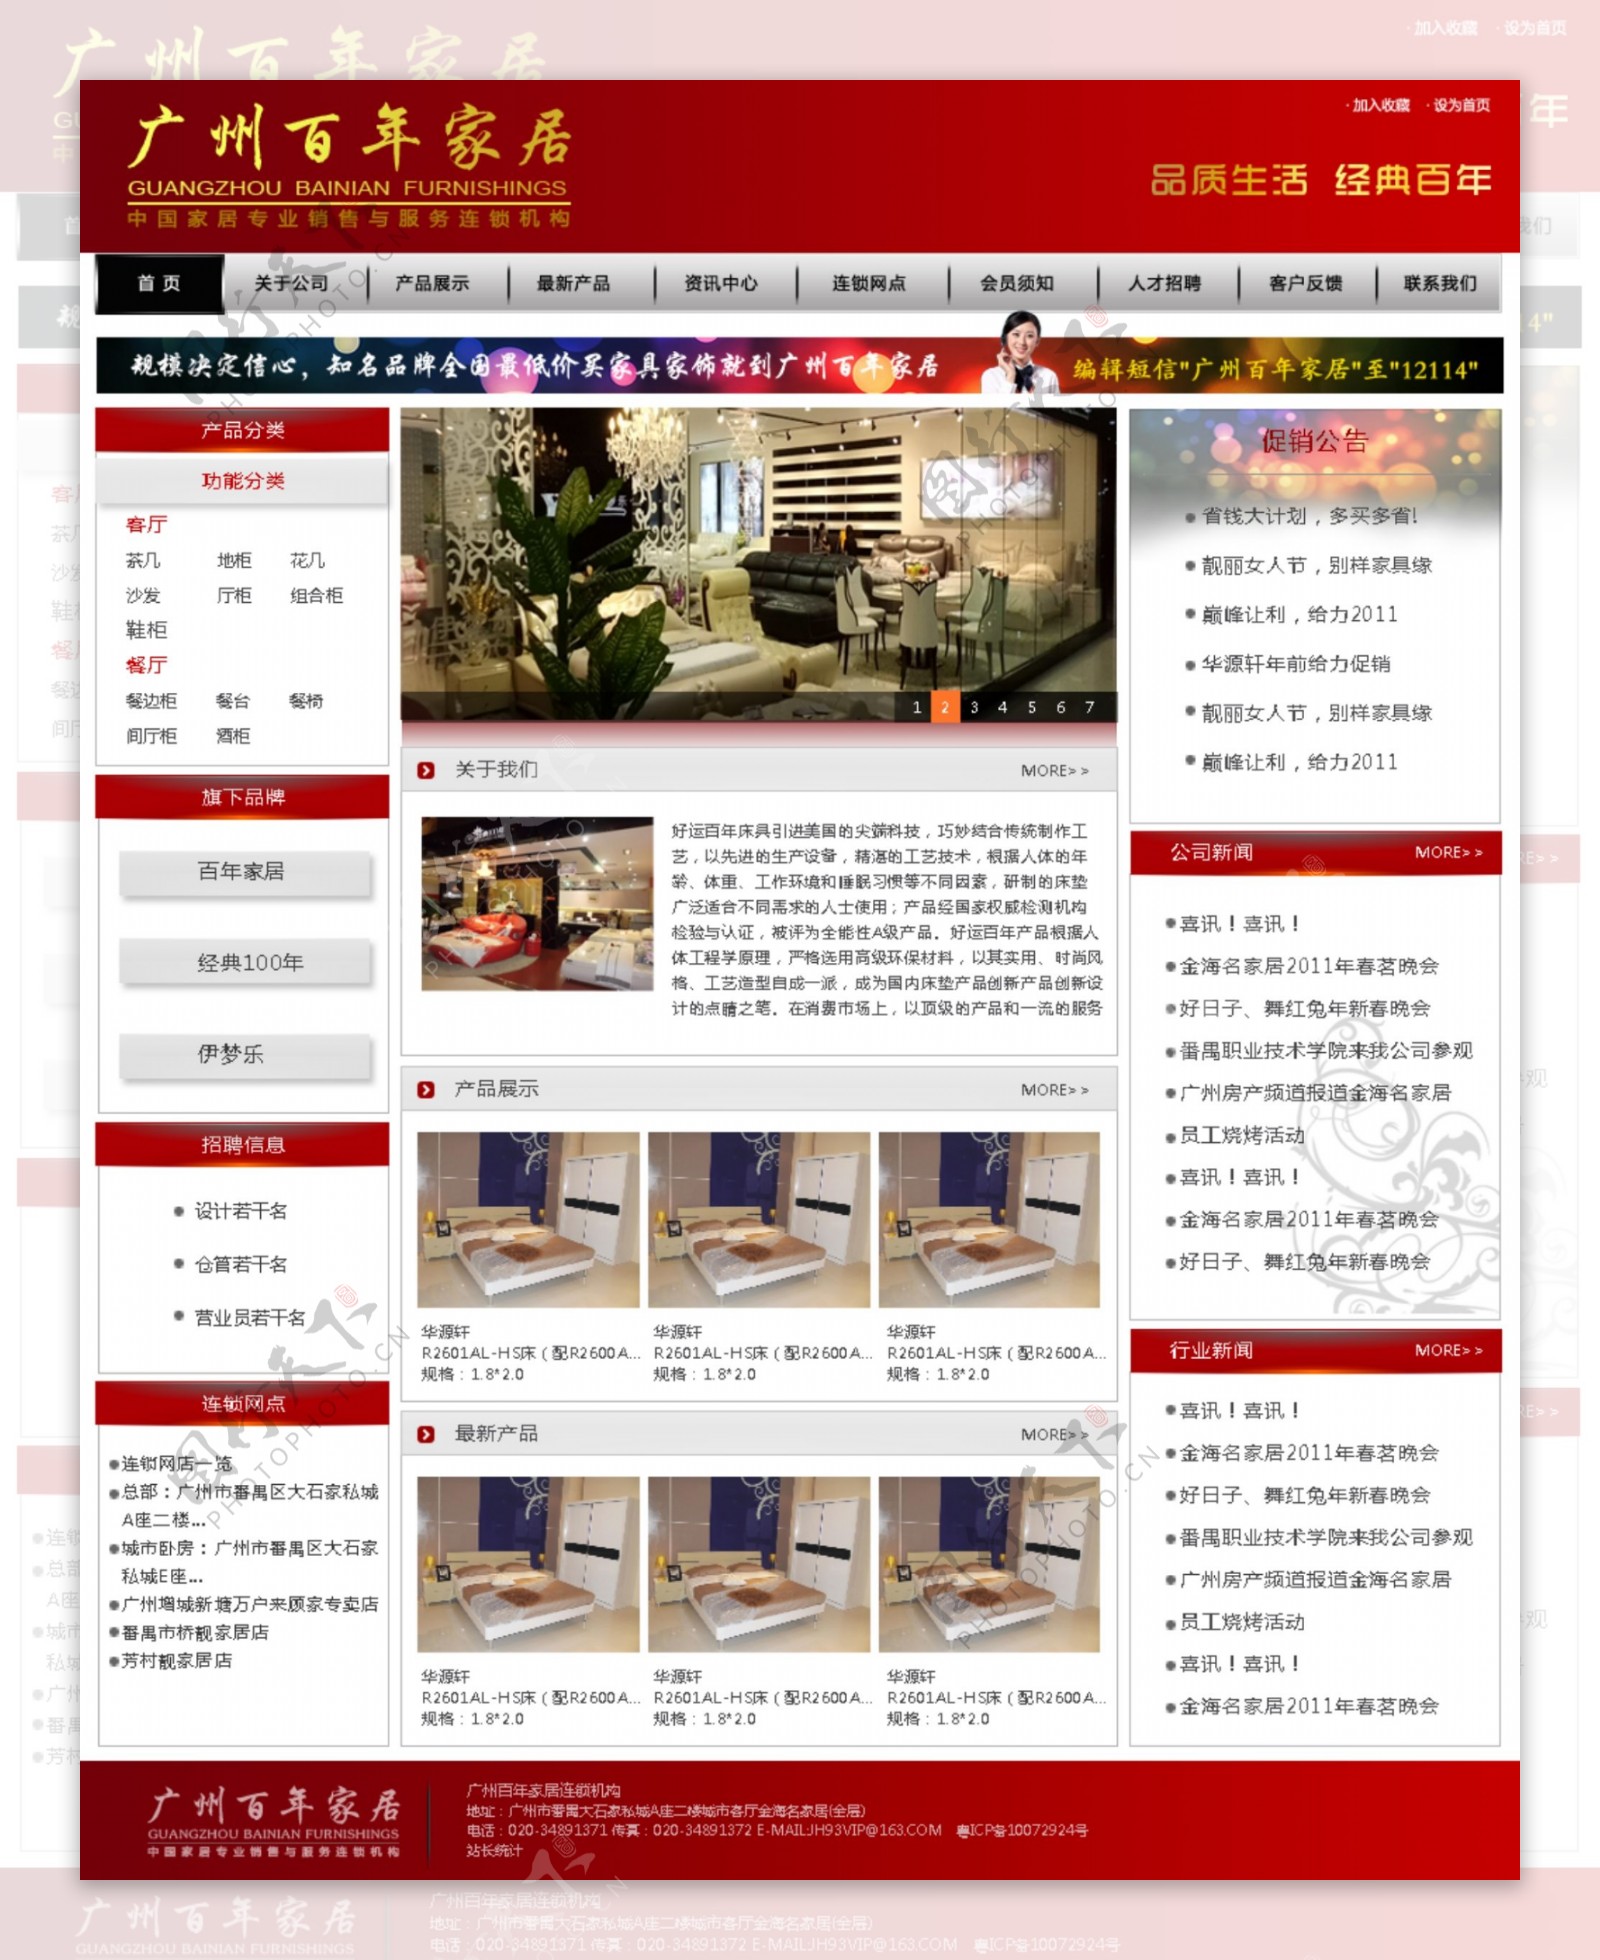 广州百年家居网页设计图片